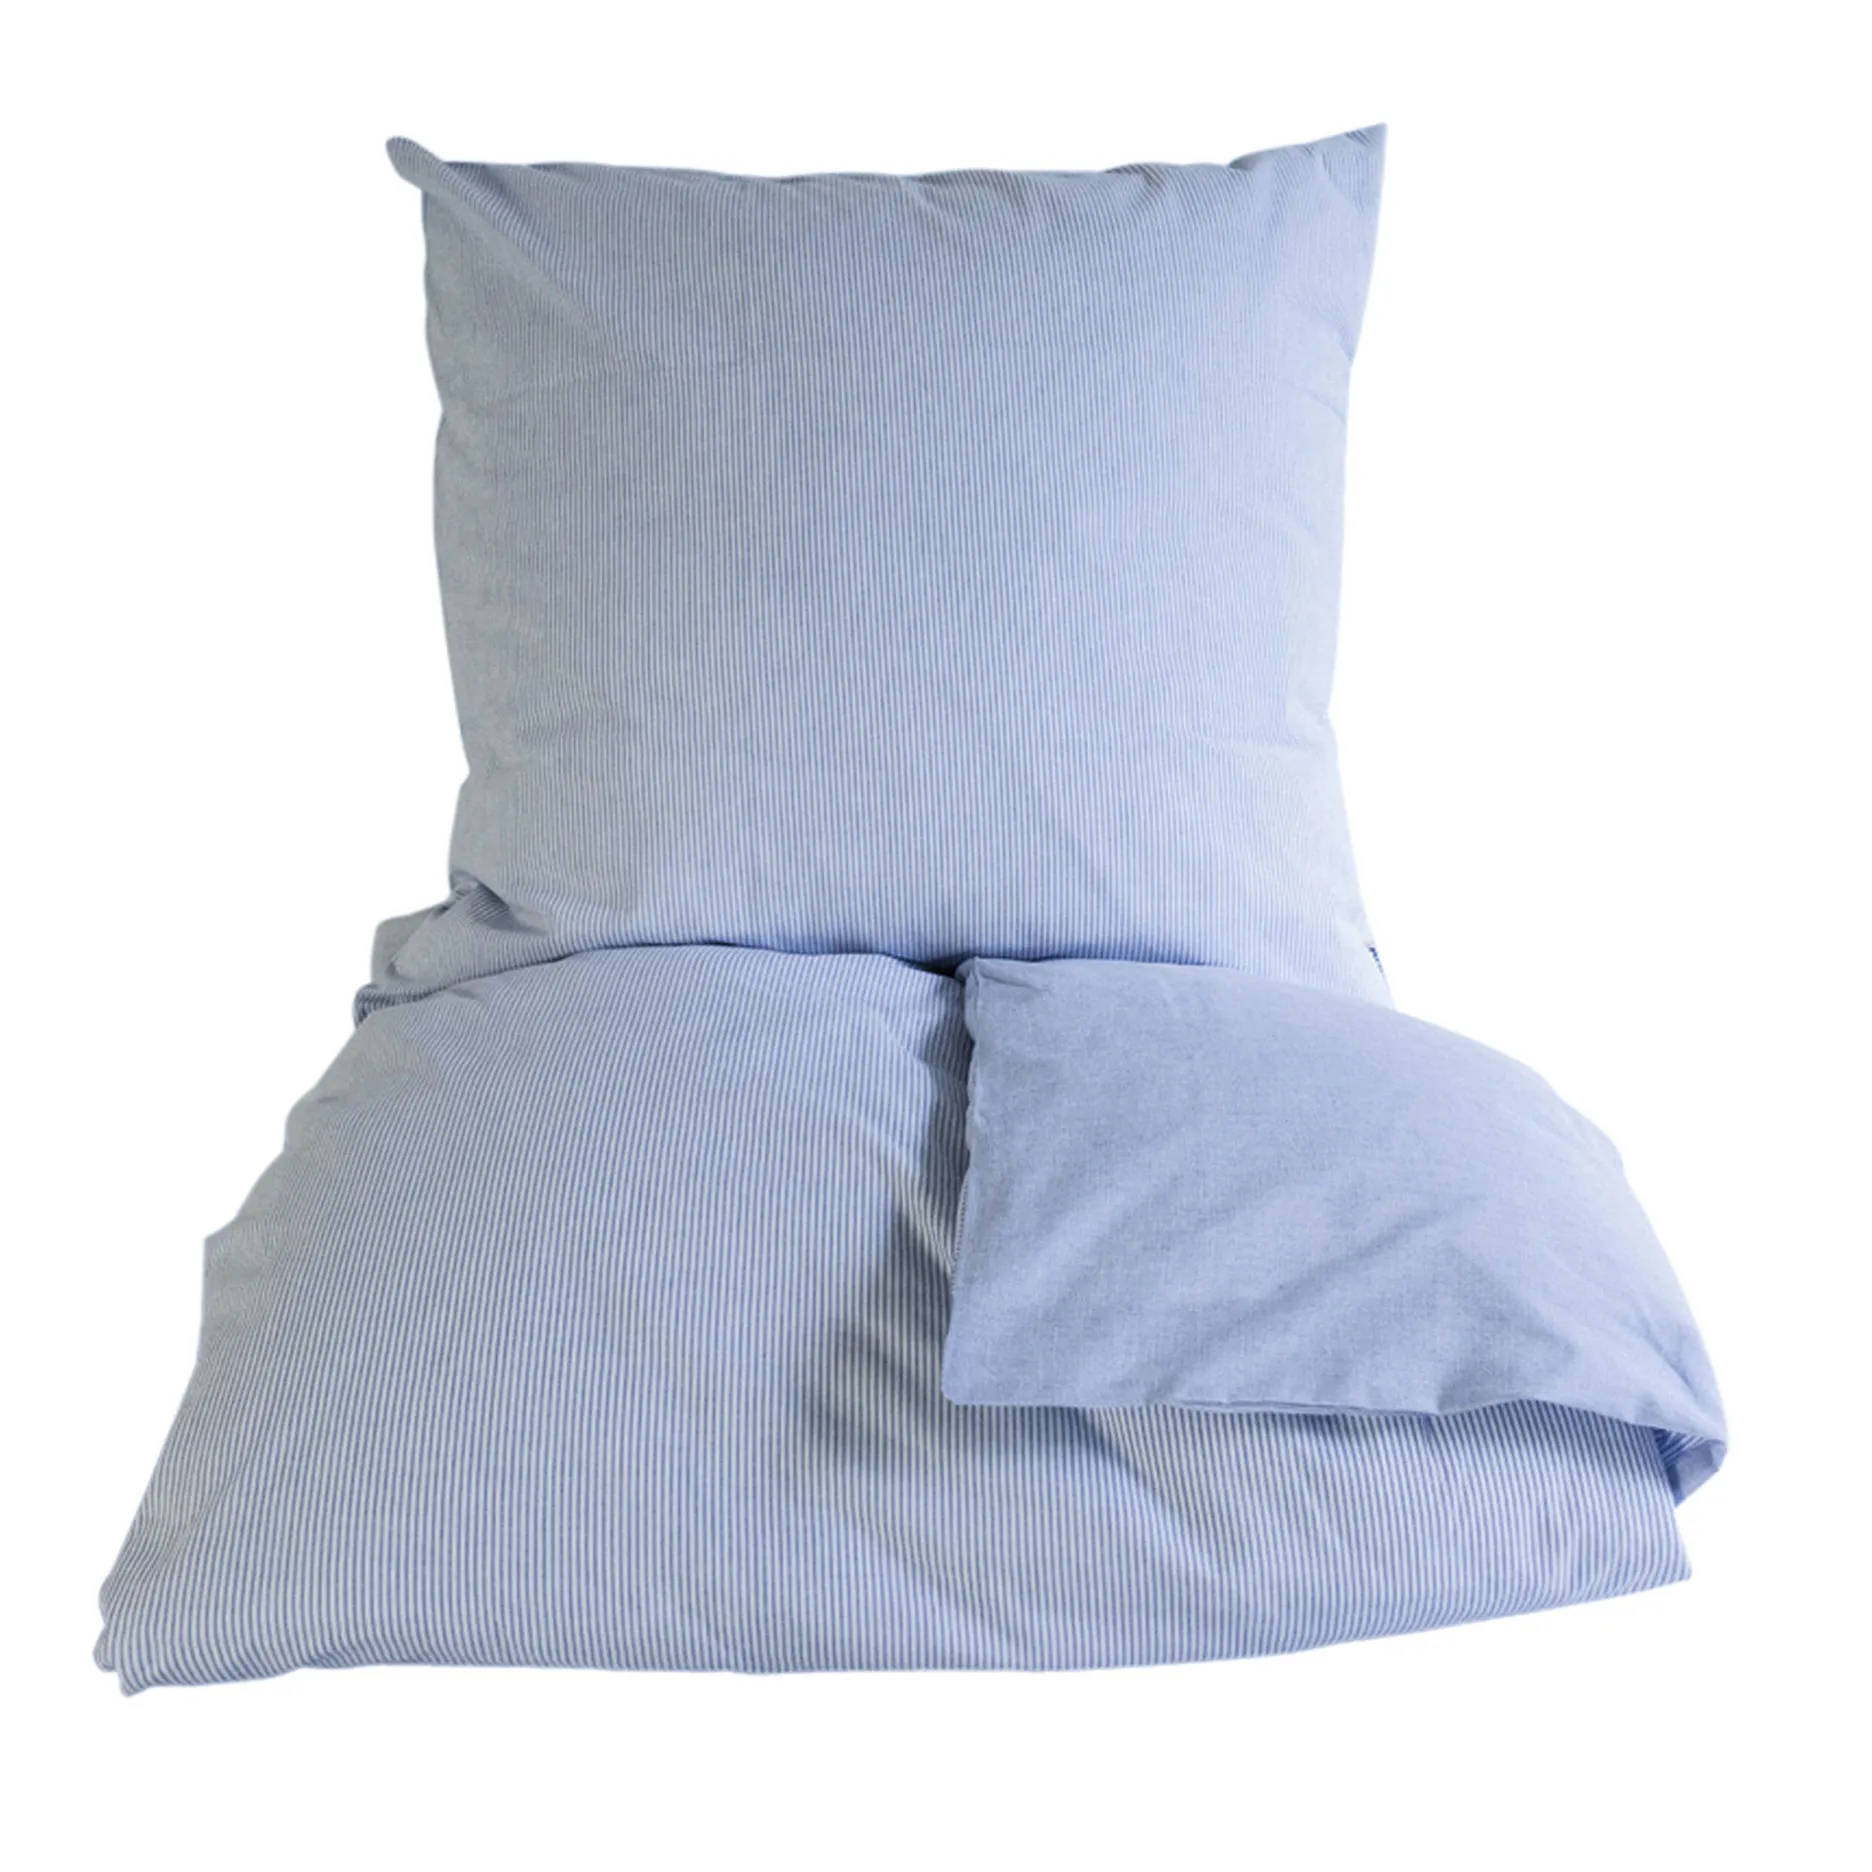 Køb OMHU strib sengetøj 140x220 cm blå lige her! | Lækker | Hurtig fragt!